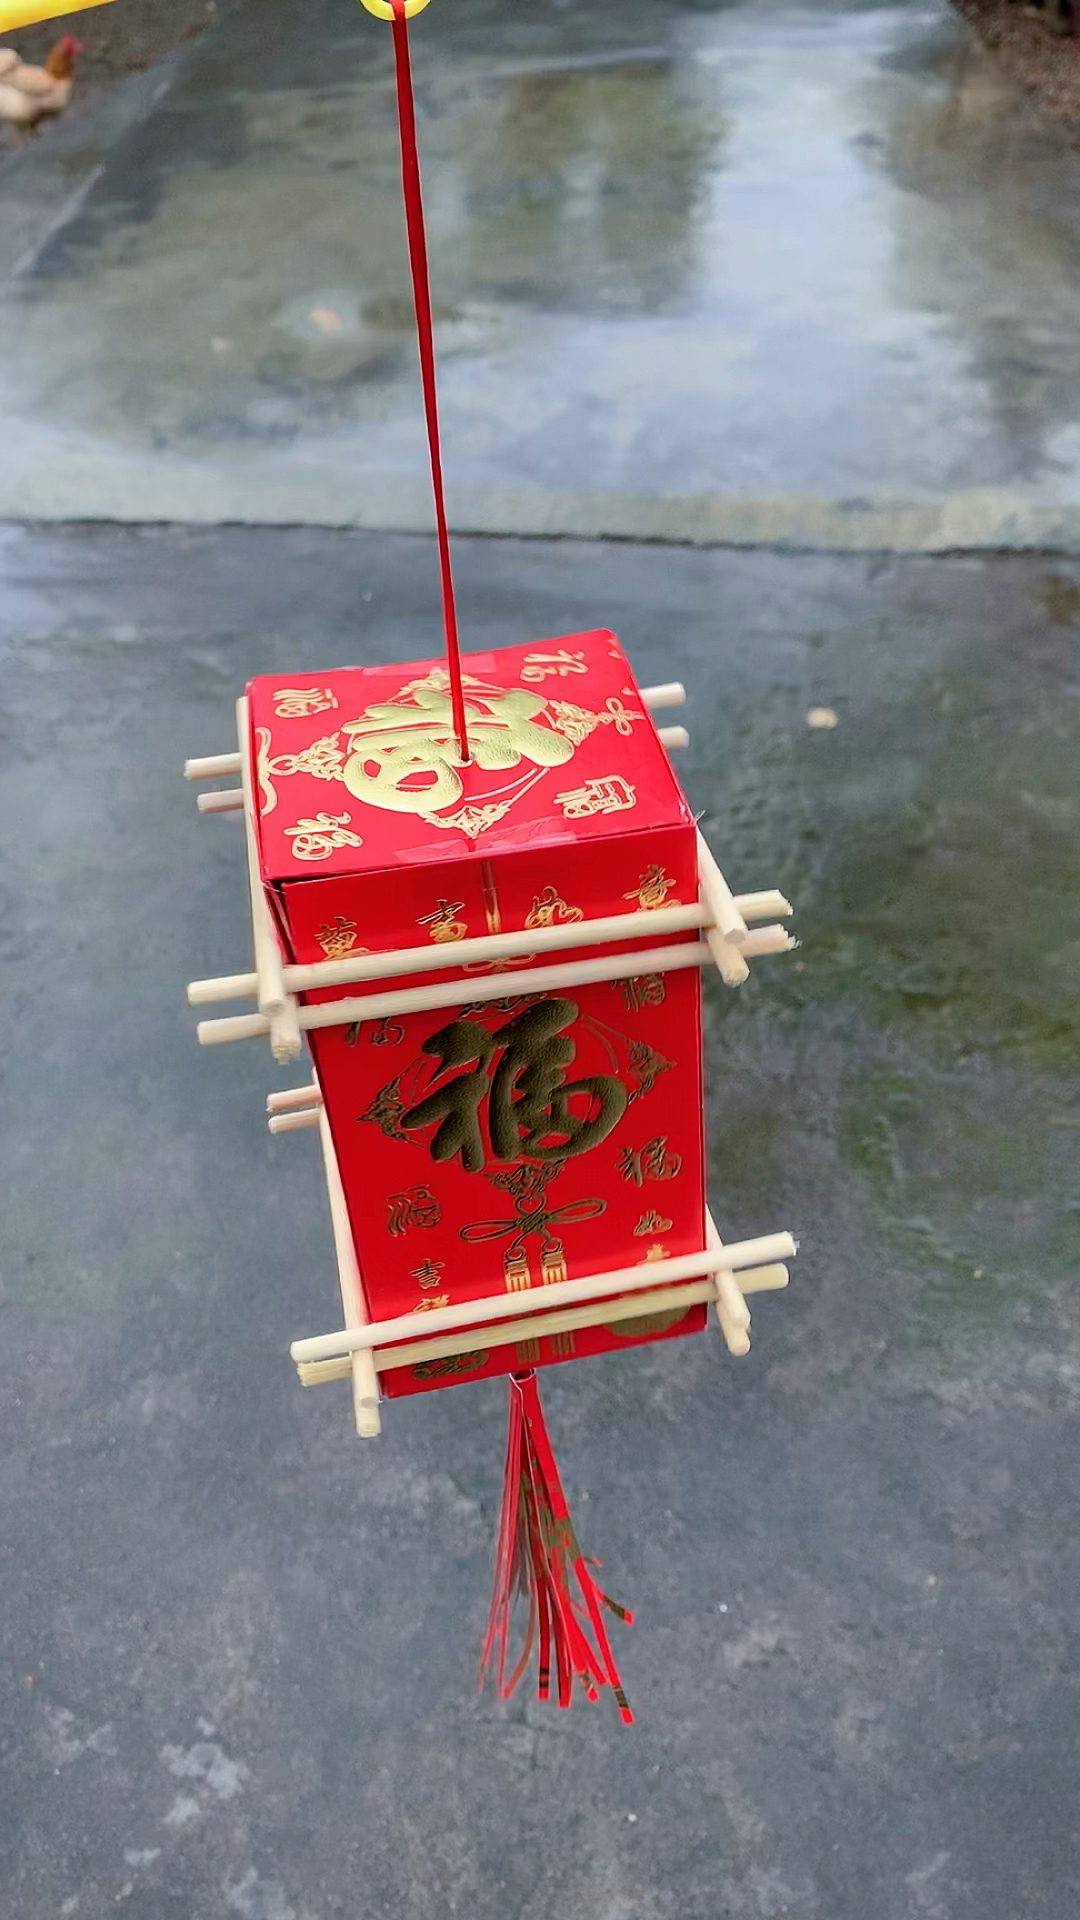 用红包和筷子做简单的古风灯笼,材料家里都有